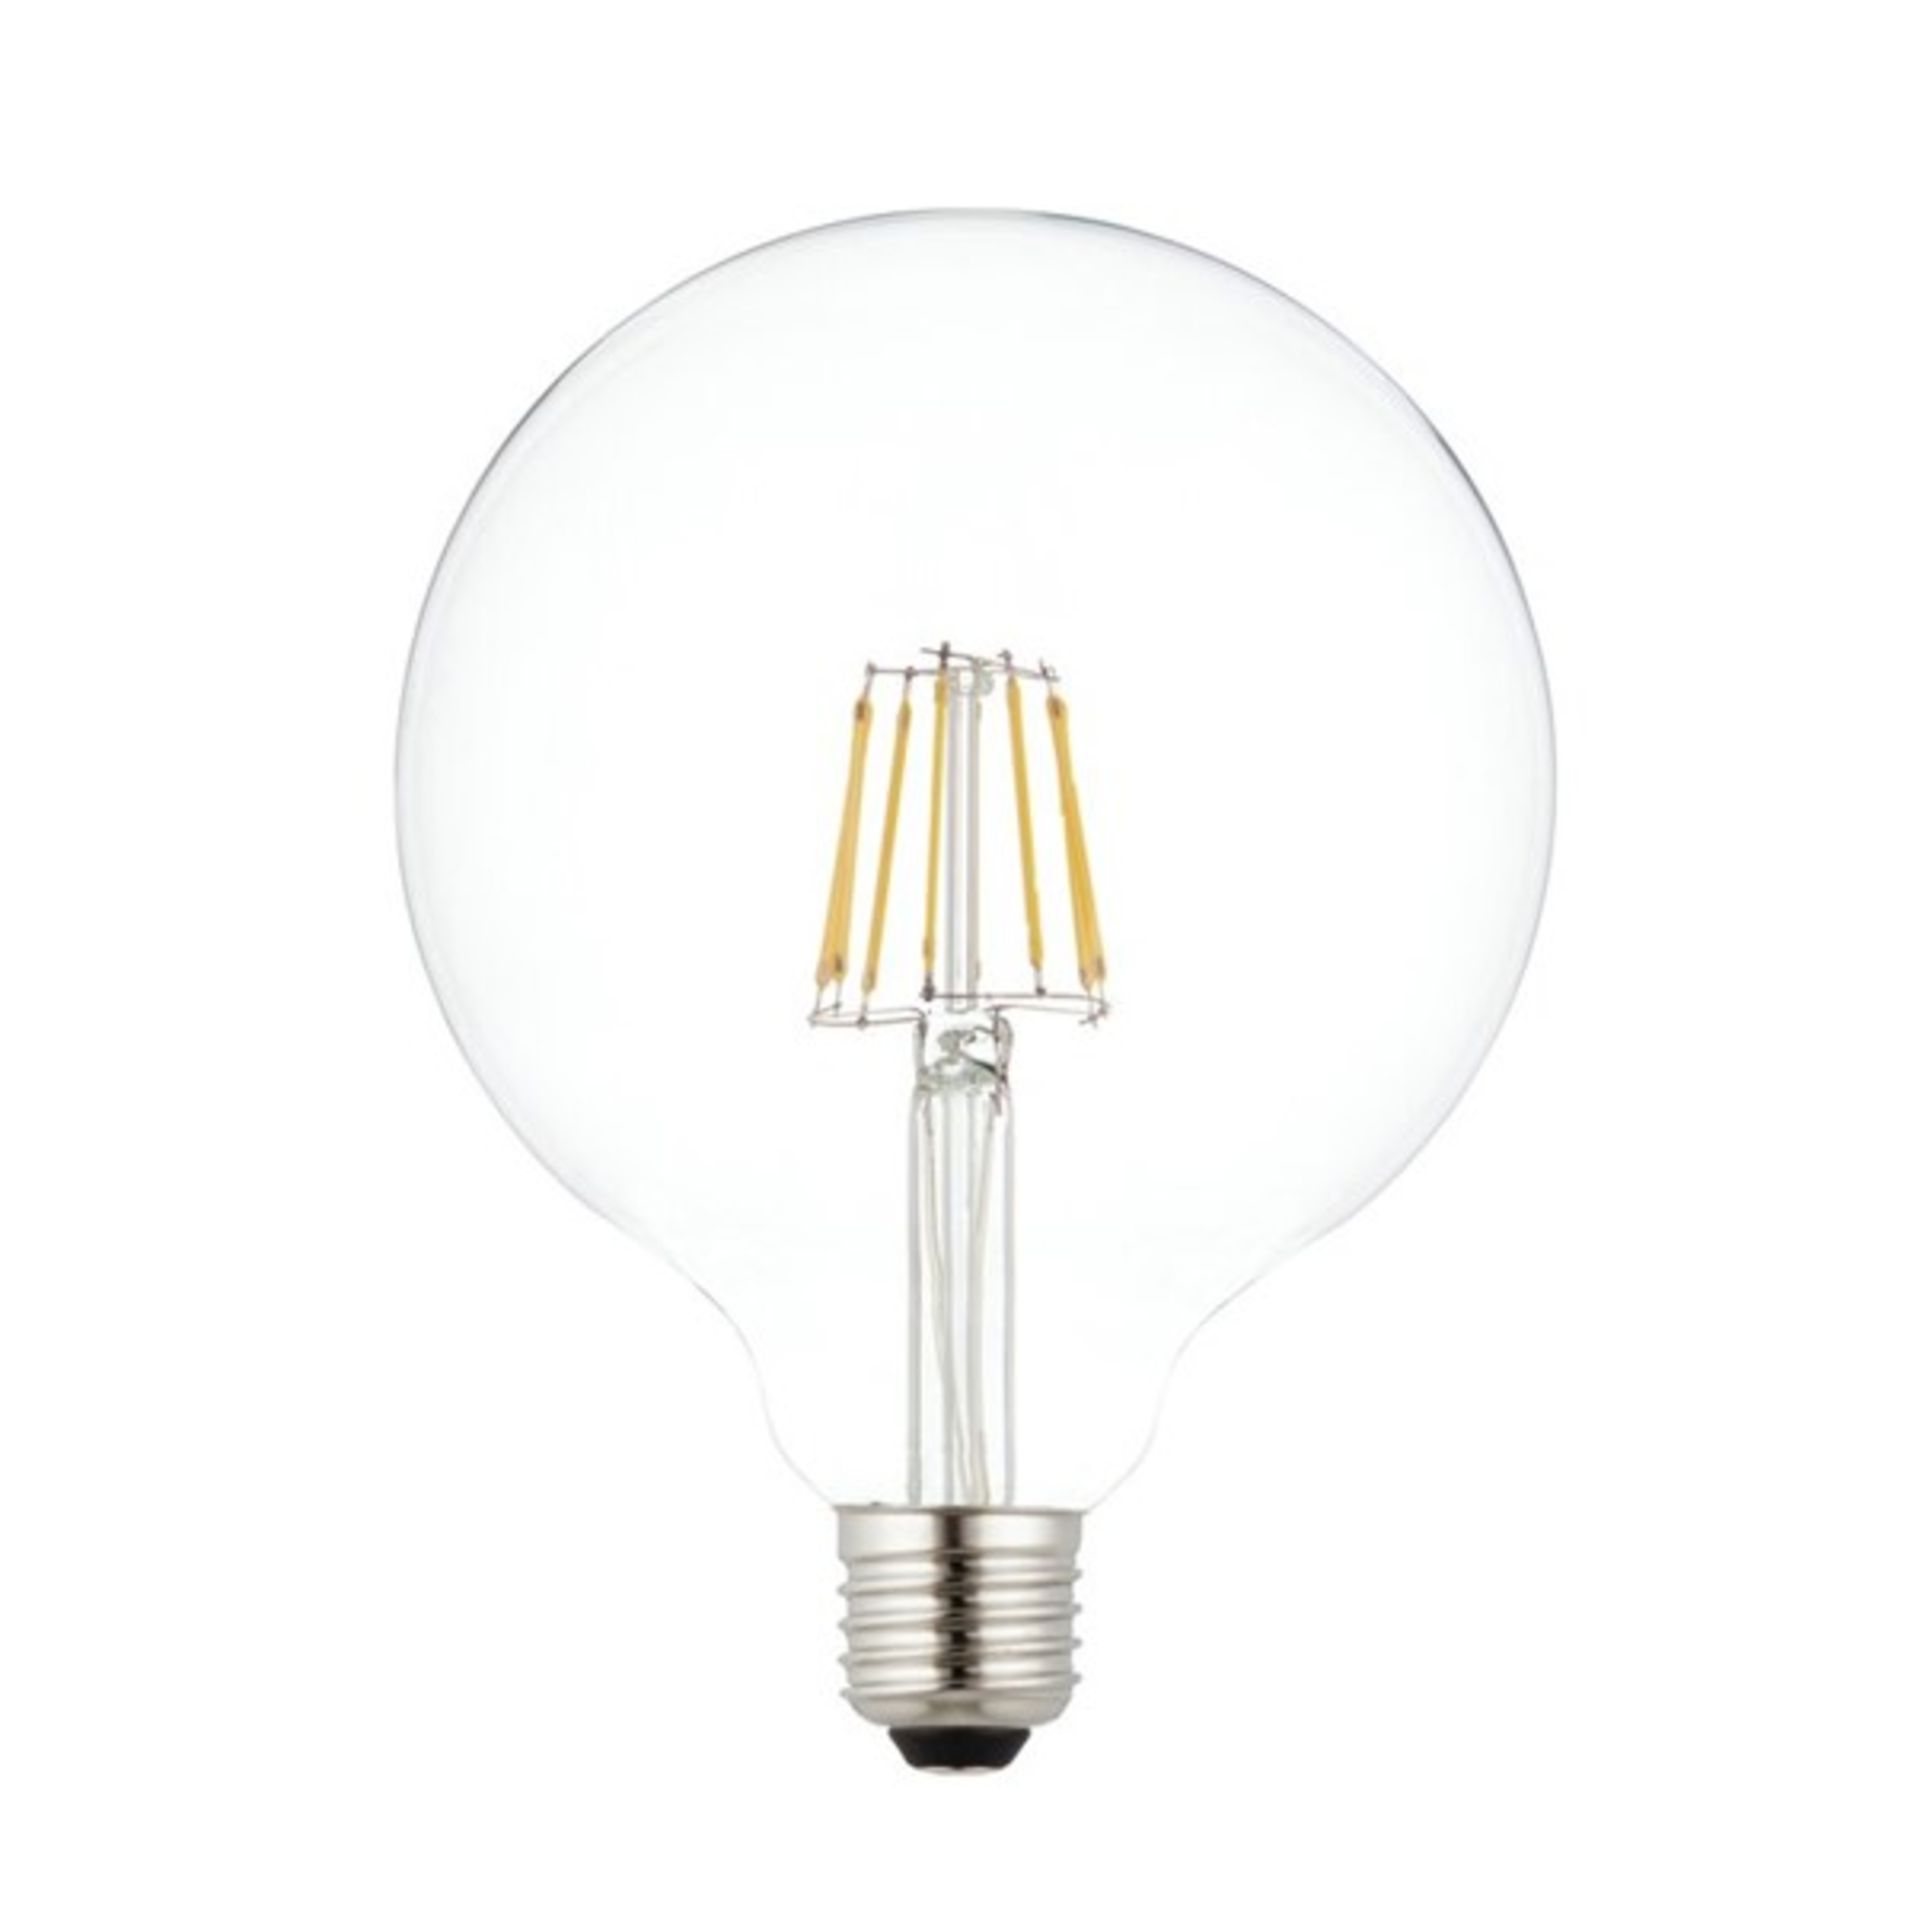 x2 7W LED E27 Vintage Globe Light Bulb - RRP £30.00. - Image 2 of 2